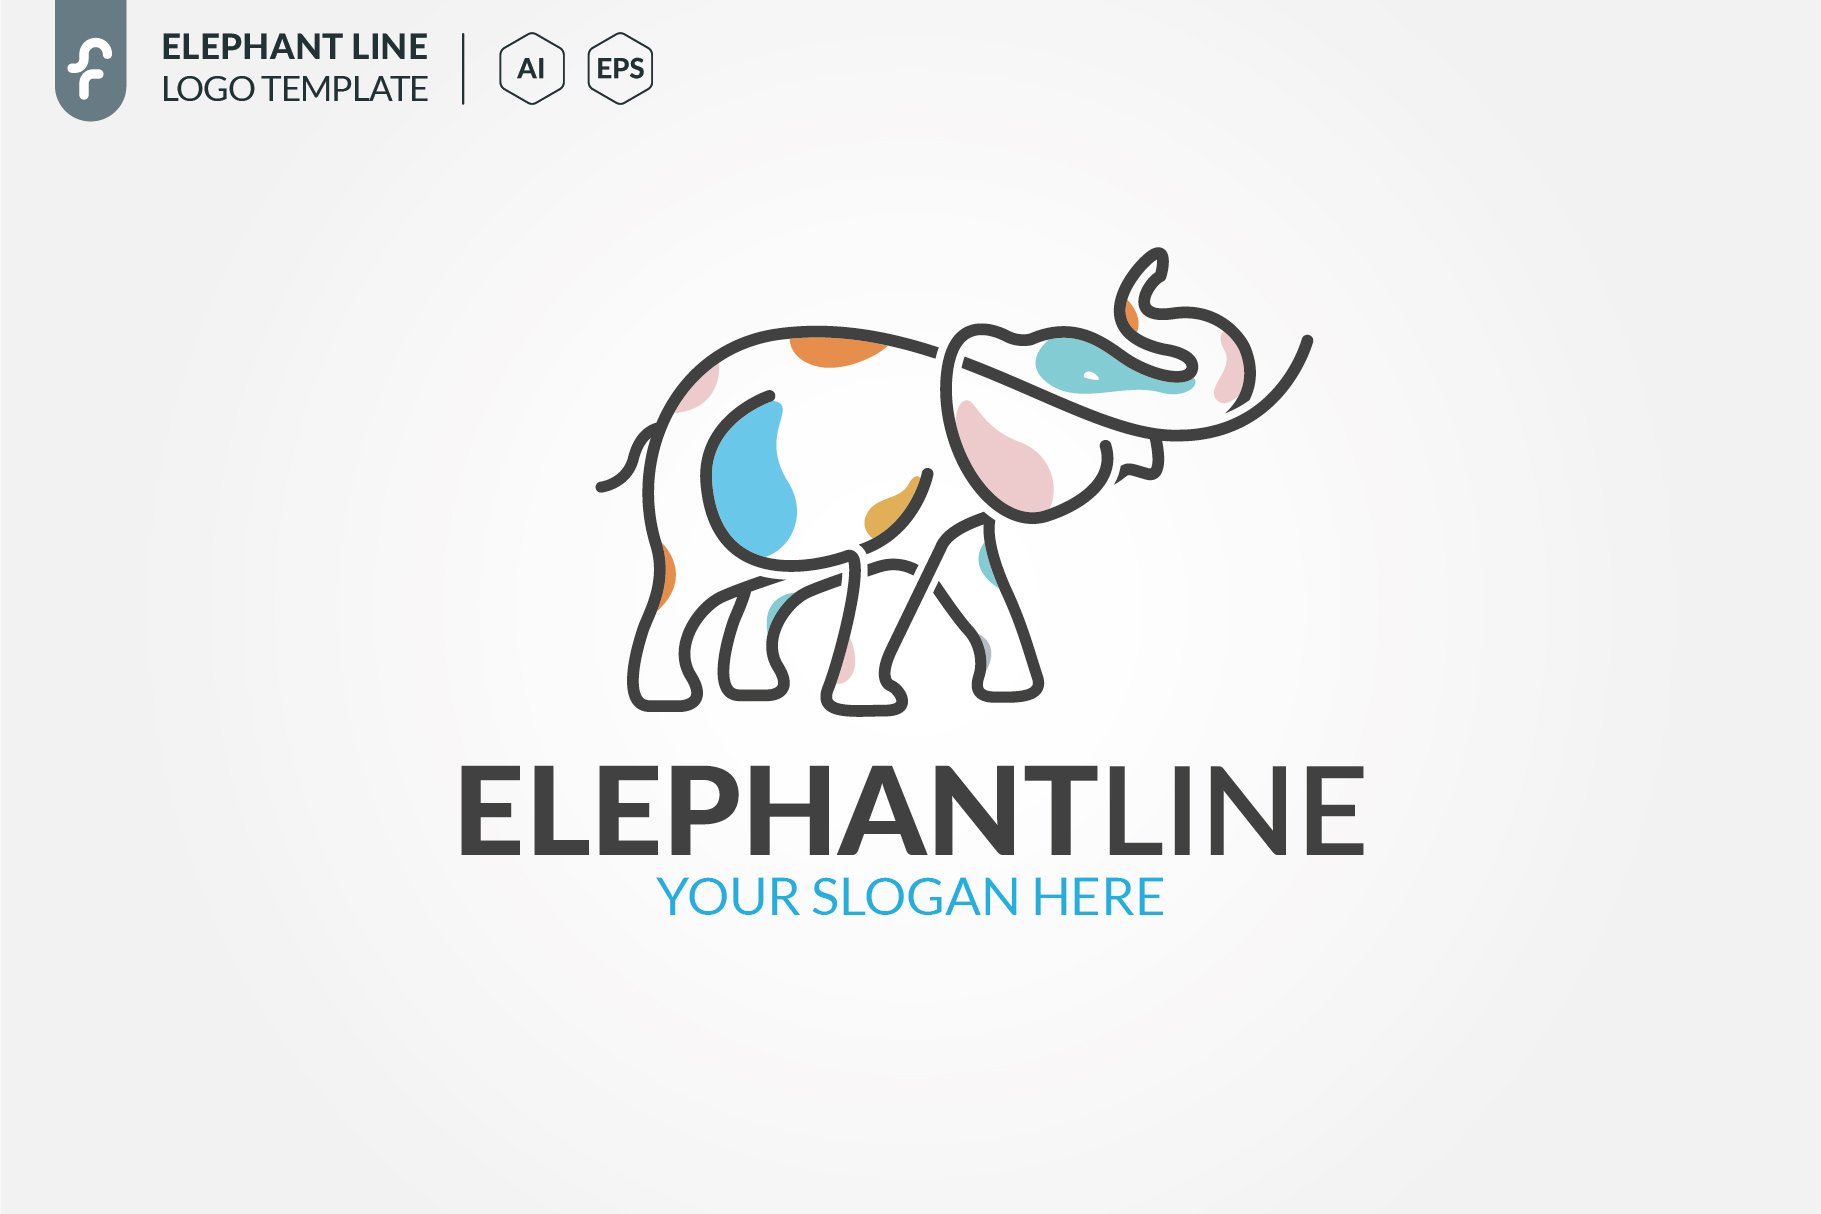 Elephant Line Logo preview image.